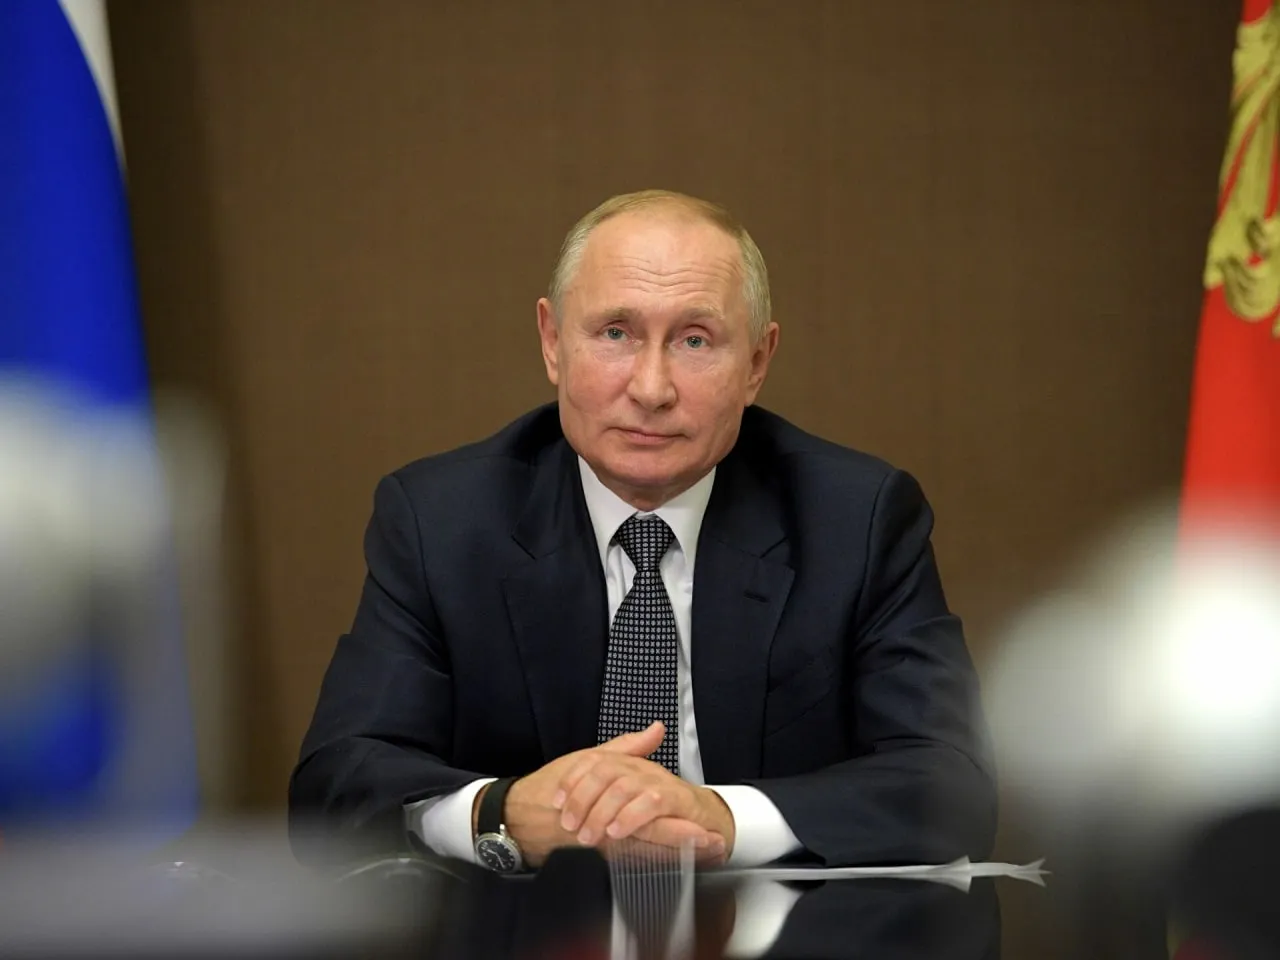 
											
											Путин исломий мамлакатларни глобал муаммоларни ҳал қилишда Россиянинг анъанавий ҳамкорлари деб атади
											
											